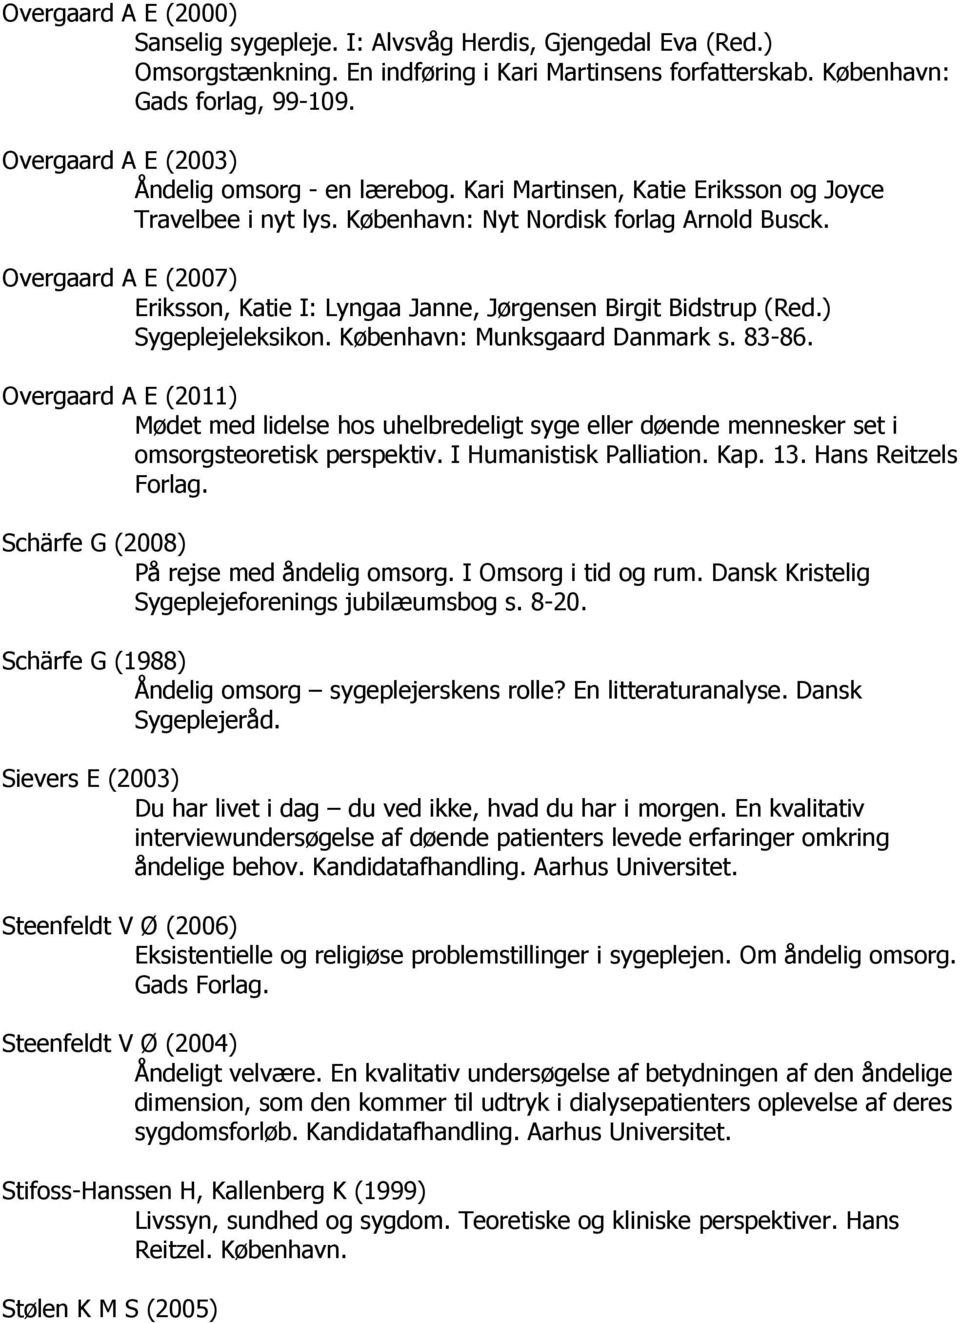 Overgaard A E (2007) Eriksson, Katie I: Lyngaa Janne, Jørgensen Birgit Bidstrup (Red.) Sygeplejeleksikon. København: Munksgaard Danmark s. 83-86.